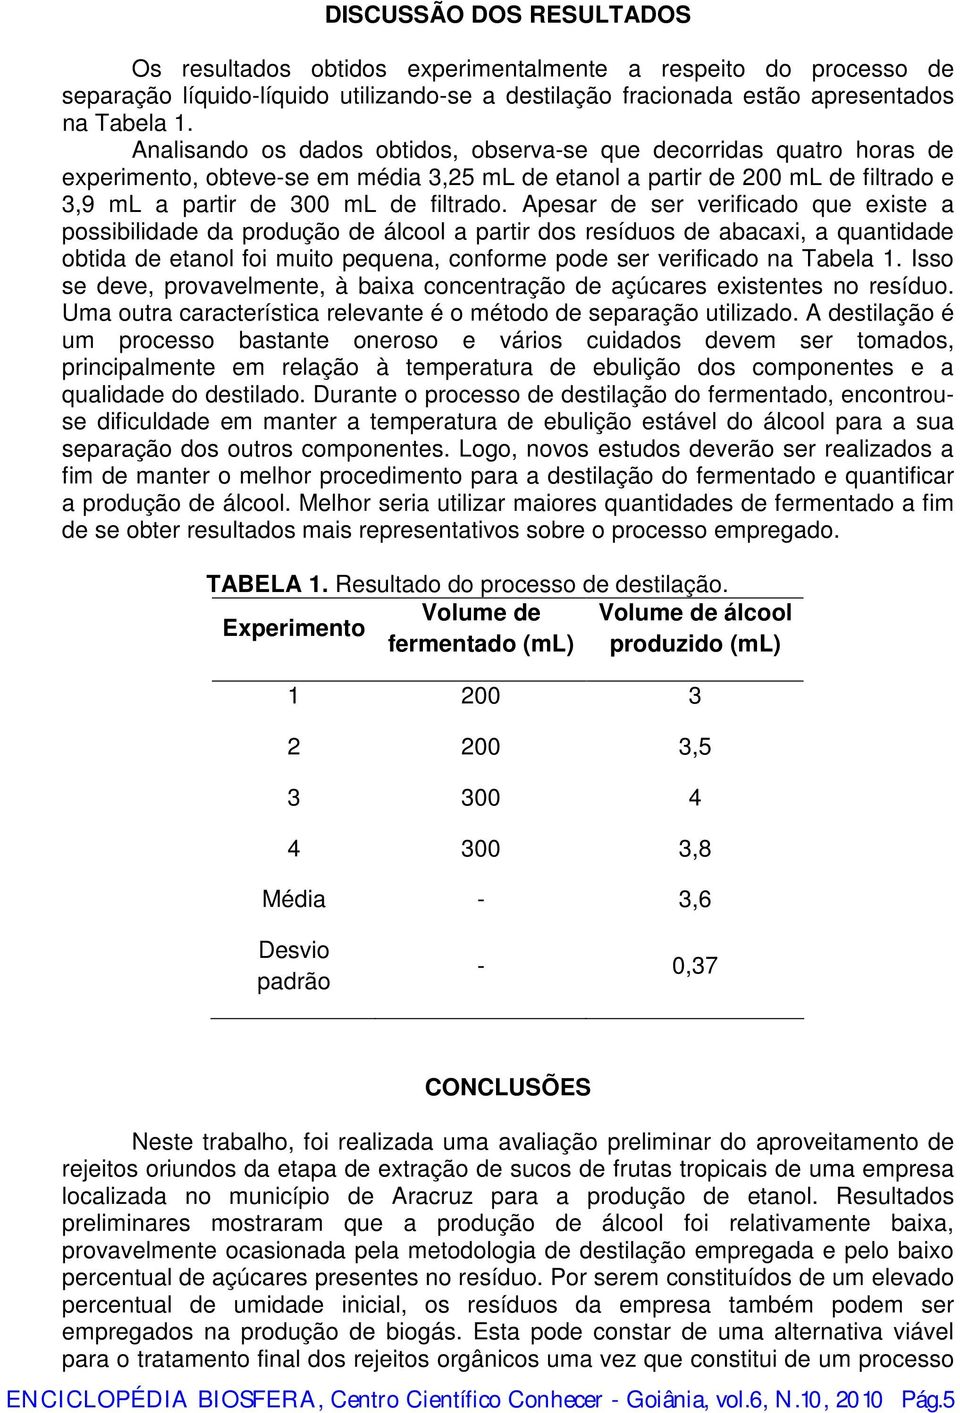 Apesar de ser verificado que existe a possibilidade da produção de álcool a partir dos resíduos de abacaxi, a quantidade obtida de etanol foi muito pequena, conforme pode ser verificado na Tabela 1.